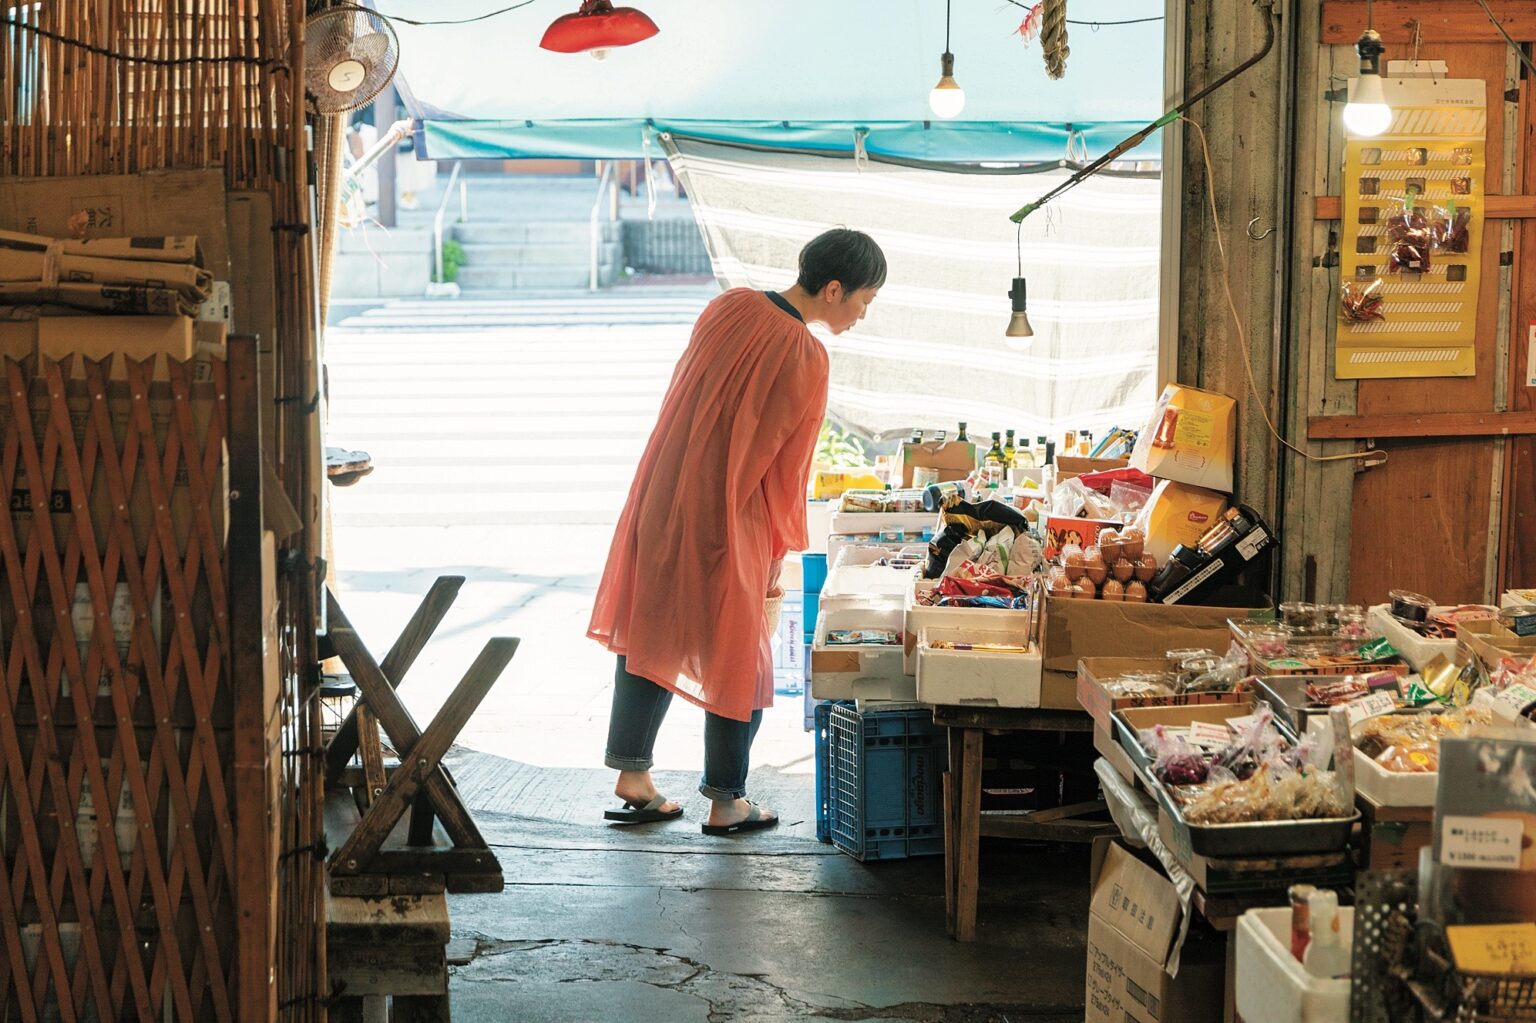 毎月数日は鎌倉で過ごすという小説家・小川糸さんとお散歩へ。町の住人やお店に注ぐ眼差しは温かく、愛にあふれる。訪れるたびに新発見があるという町の魅力について聞く。